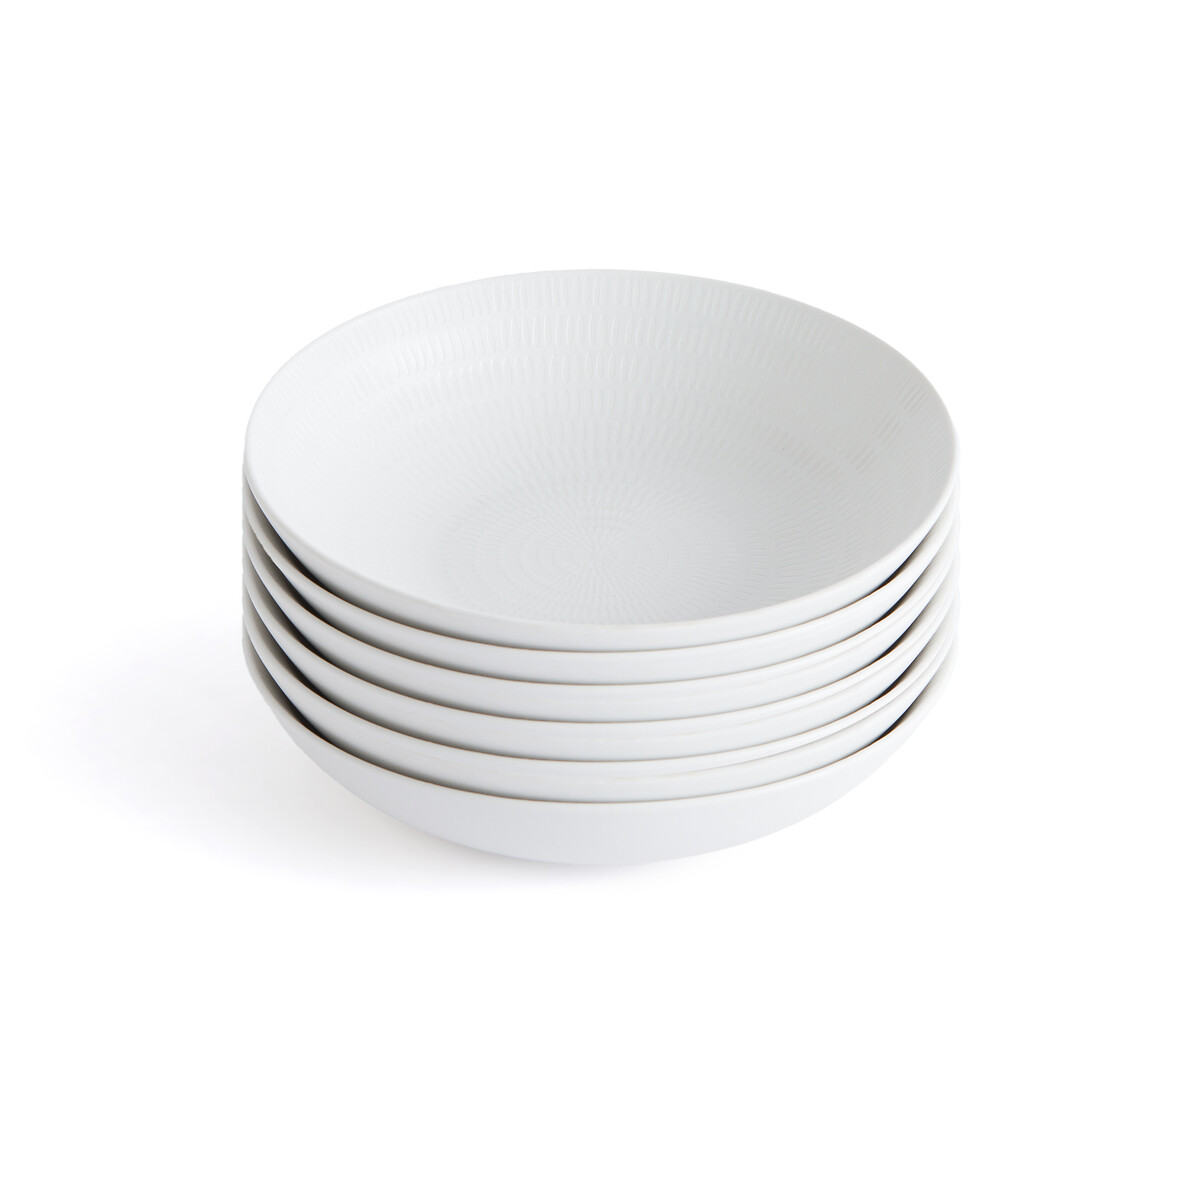 Комплект из шести глубоких тарелок из керамики Rizia единый размер бежевый комплект из 6 глубоких тарелок paloum единый размер каштановый